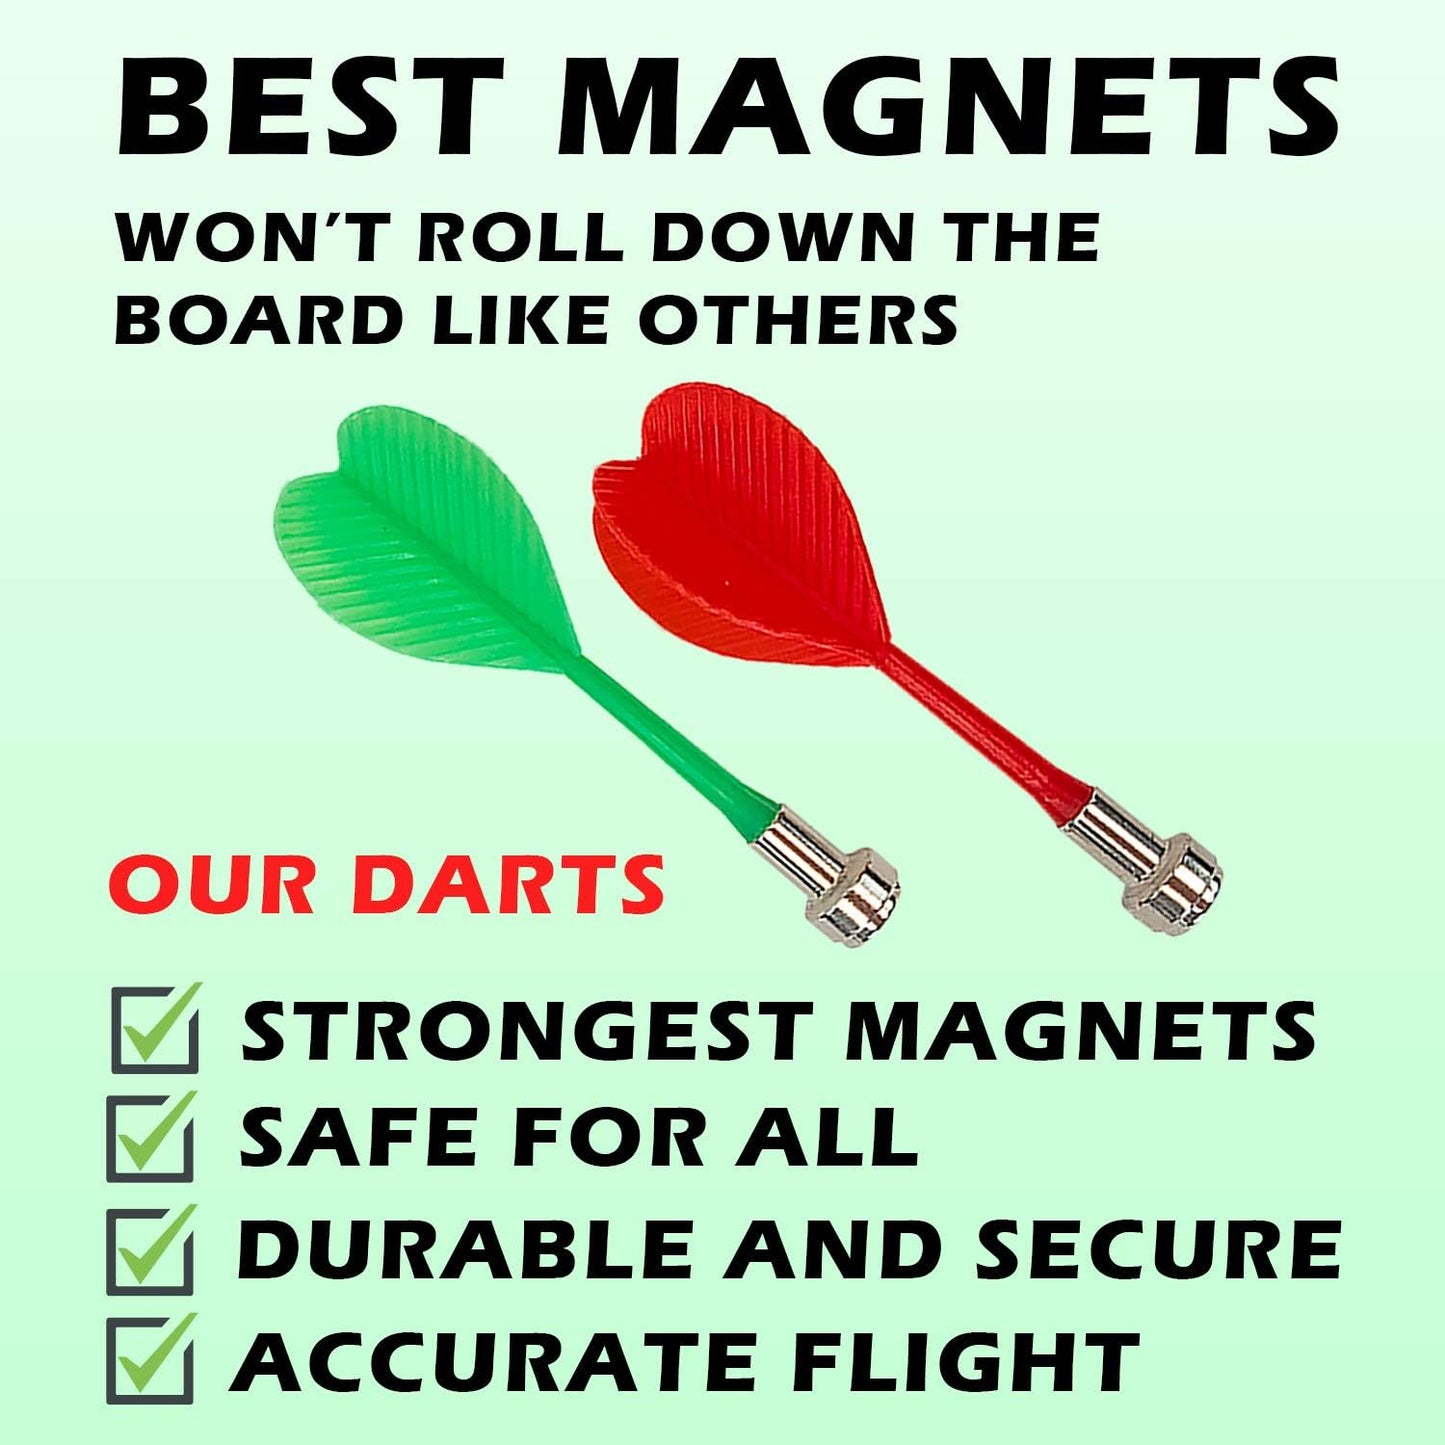 Magnetic Dart Board Set For Kids